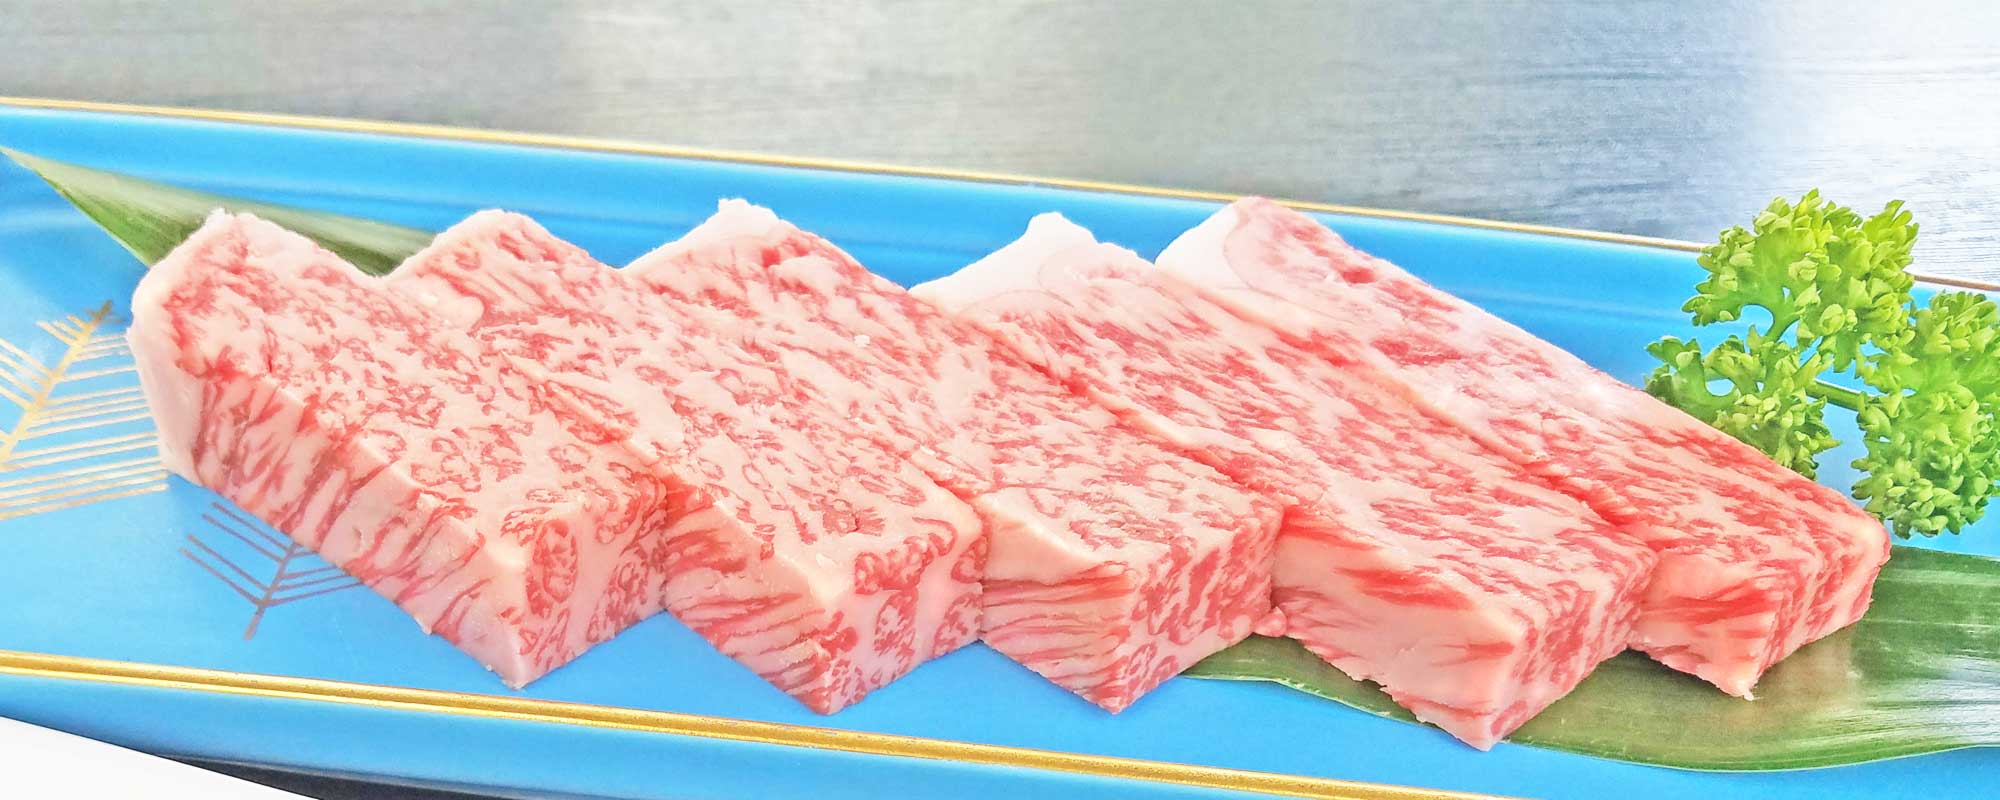 松阪牛サーロイン肉